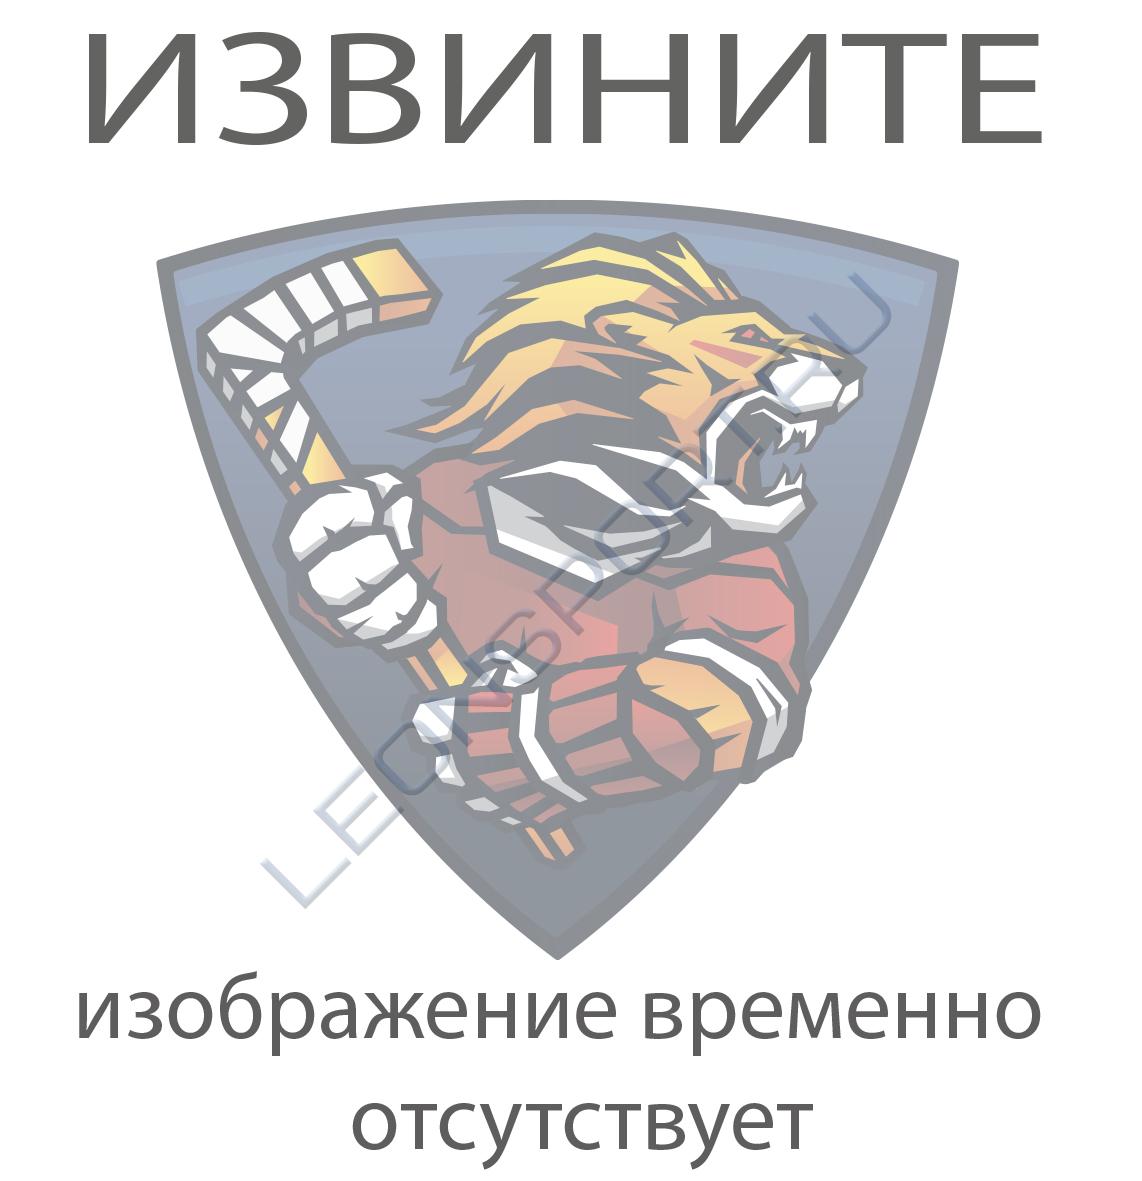 Мешок клубный спортивный FLAME с логотипом ХК ЦСКА